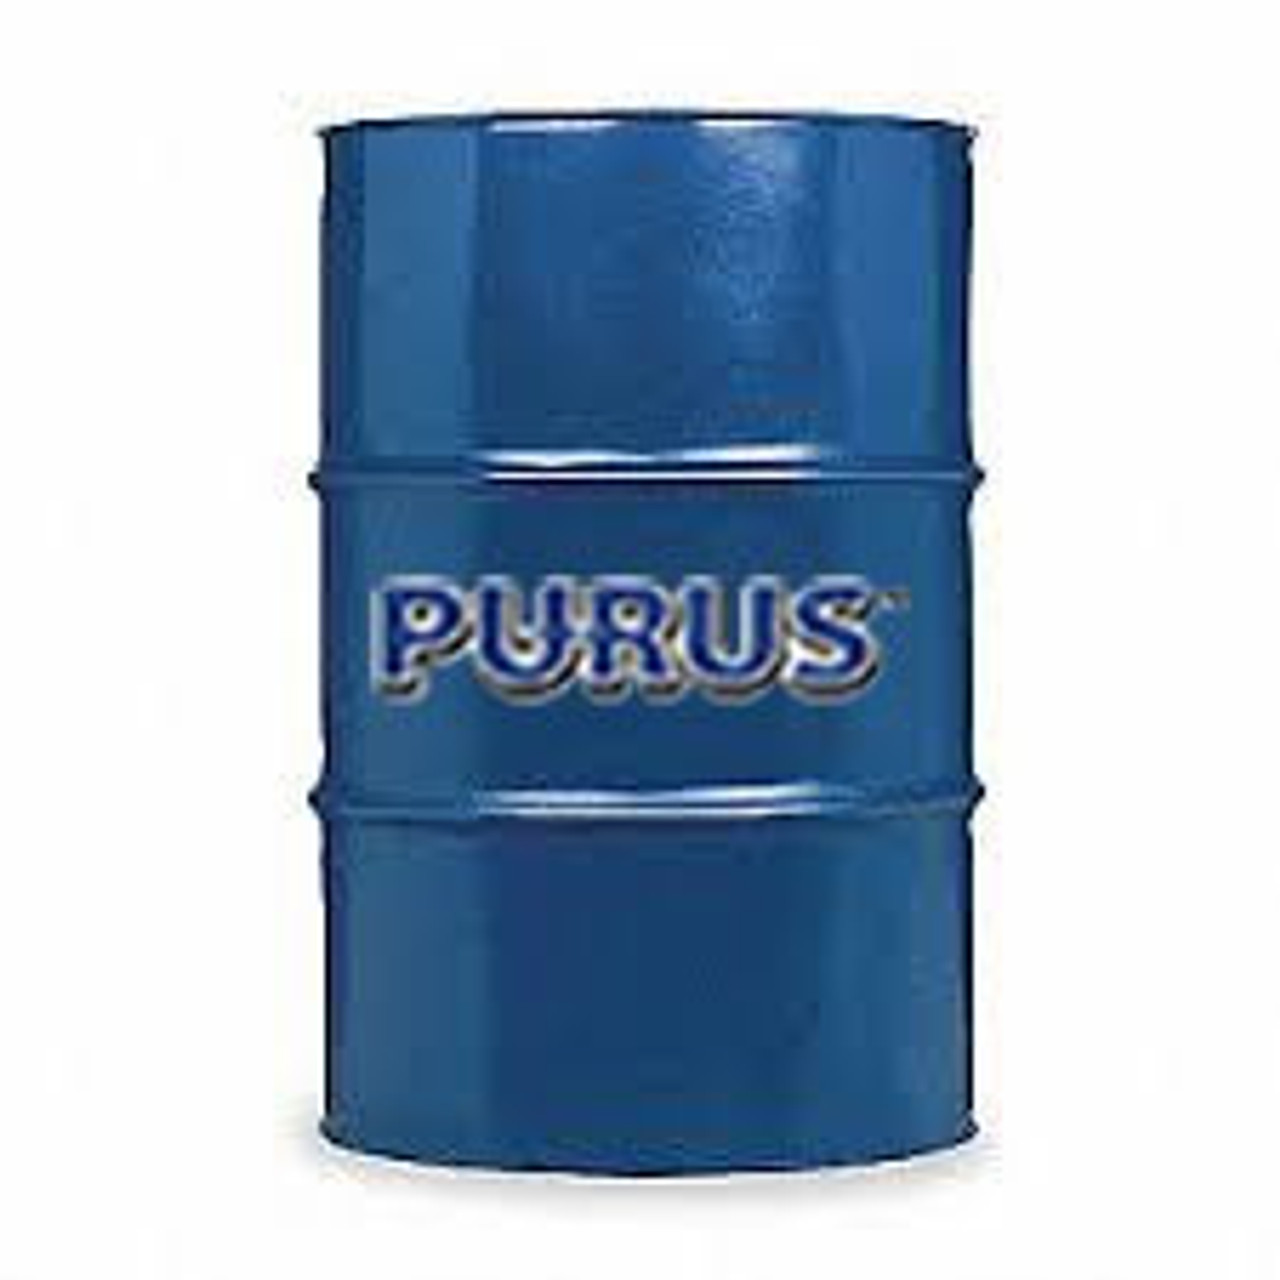 Purus Turbine Oil 46